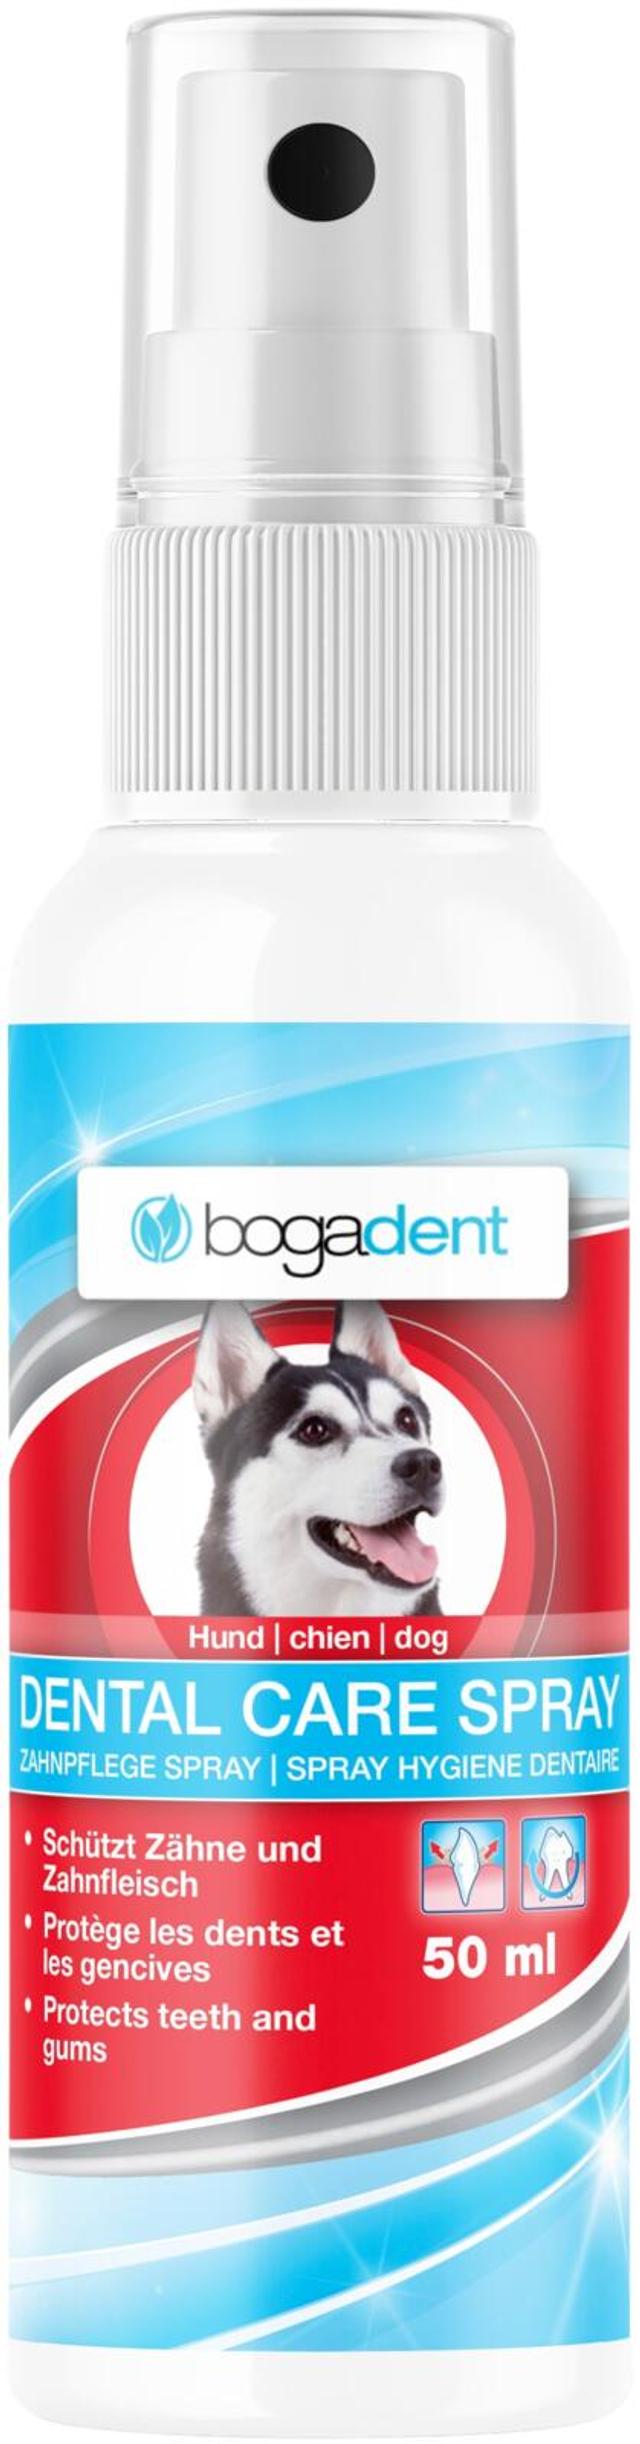 Bogadent koiran hampaanhoitosuihke 50ml